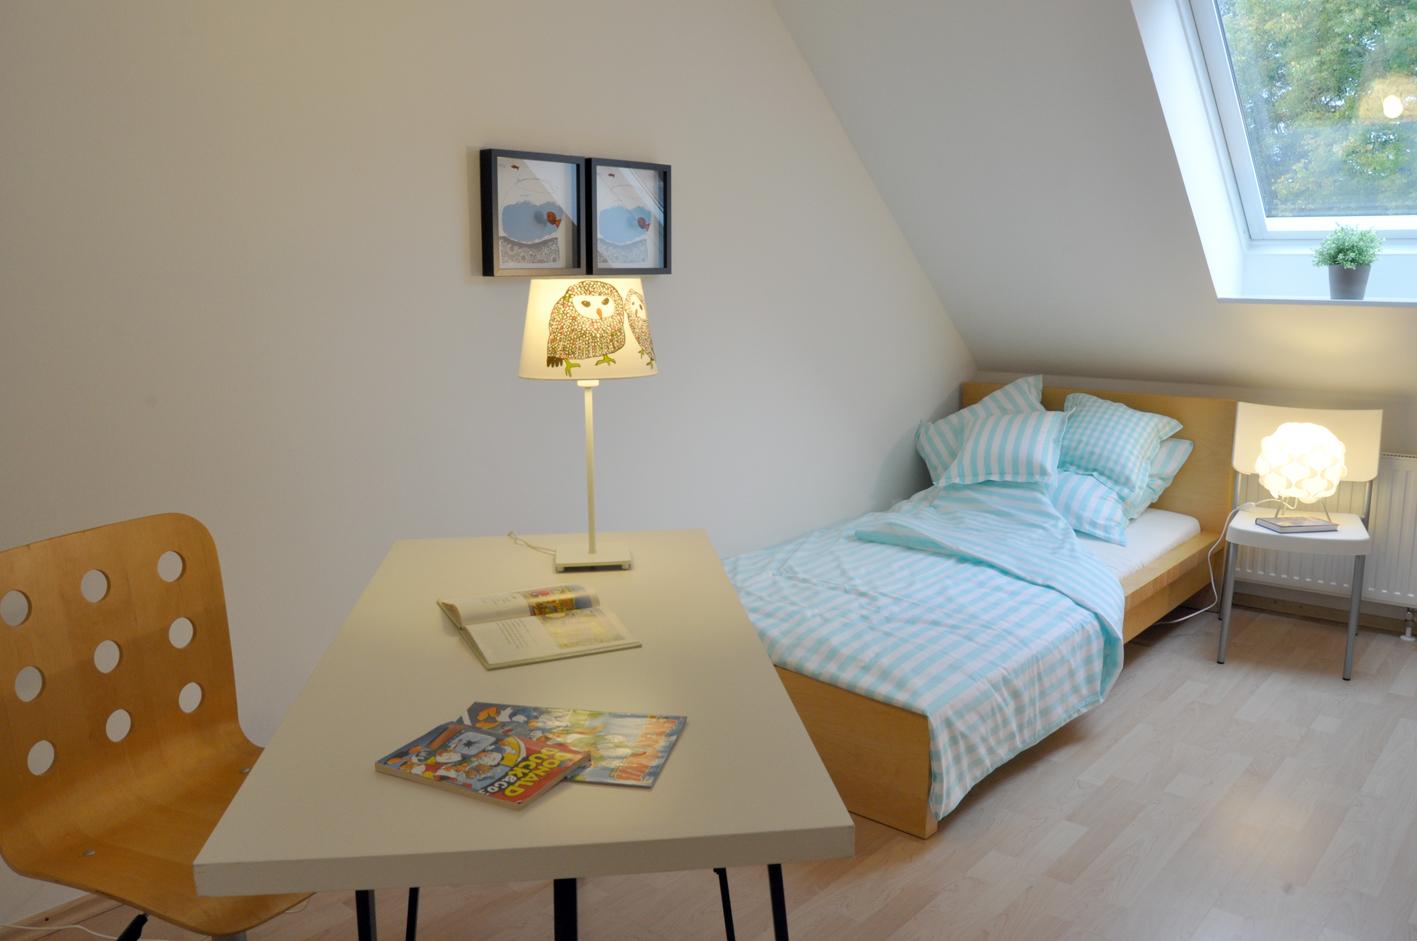 Gäste- bzw. Jugendzimmer nachher #ferienhaus #ferienwohnung ©Uwehoch2, Wahlstedt